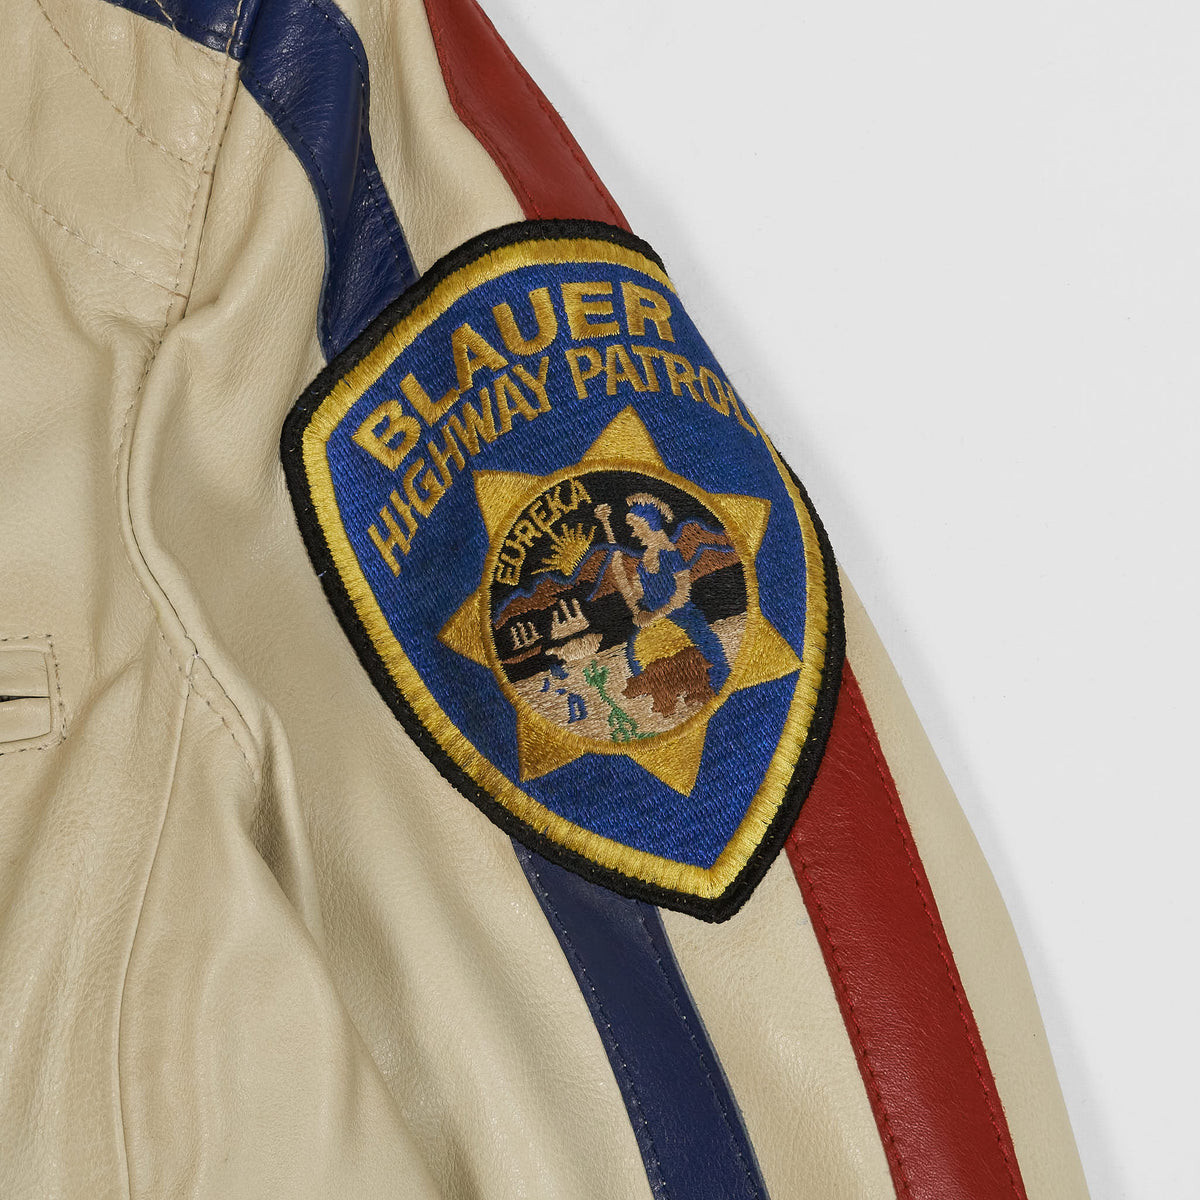 Blauer Ladies Highway Patrol Cafe RacerLeather Jacket